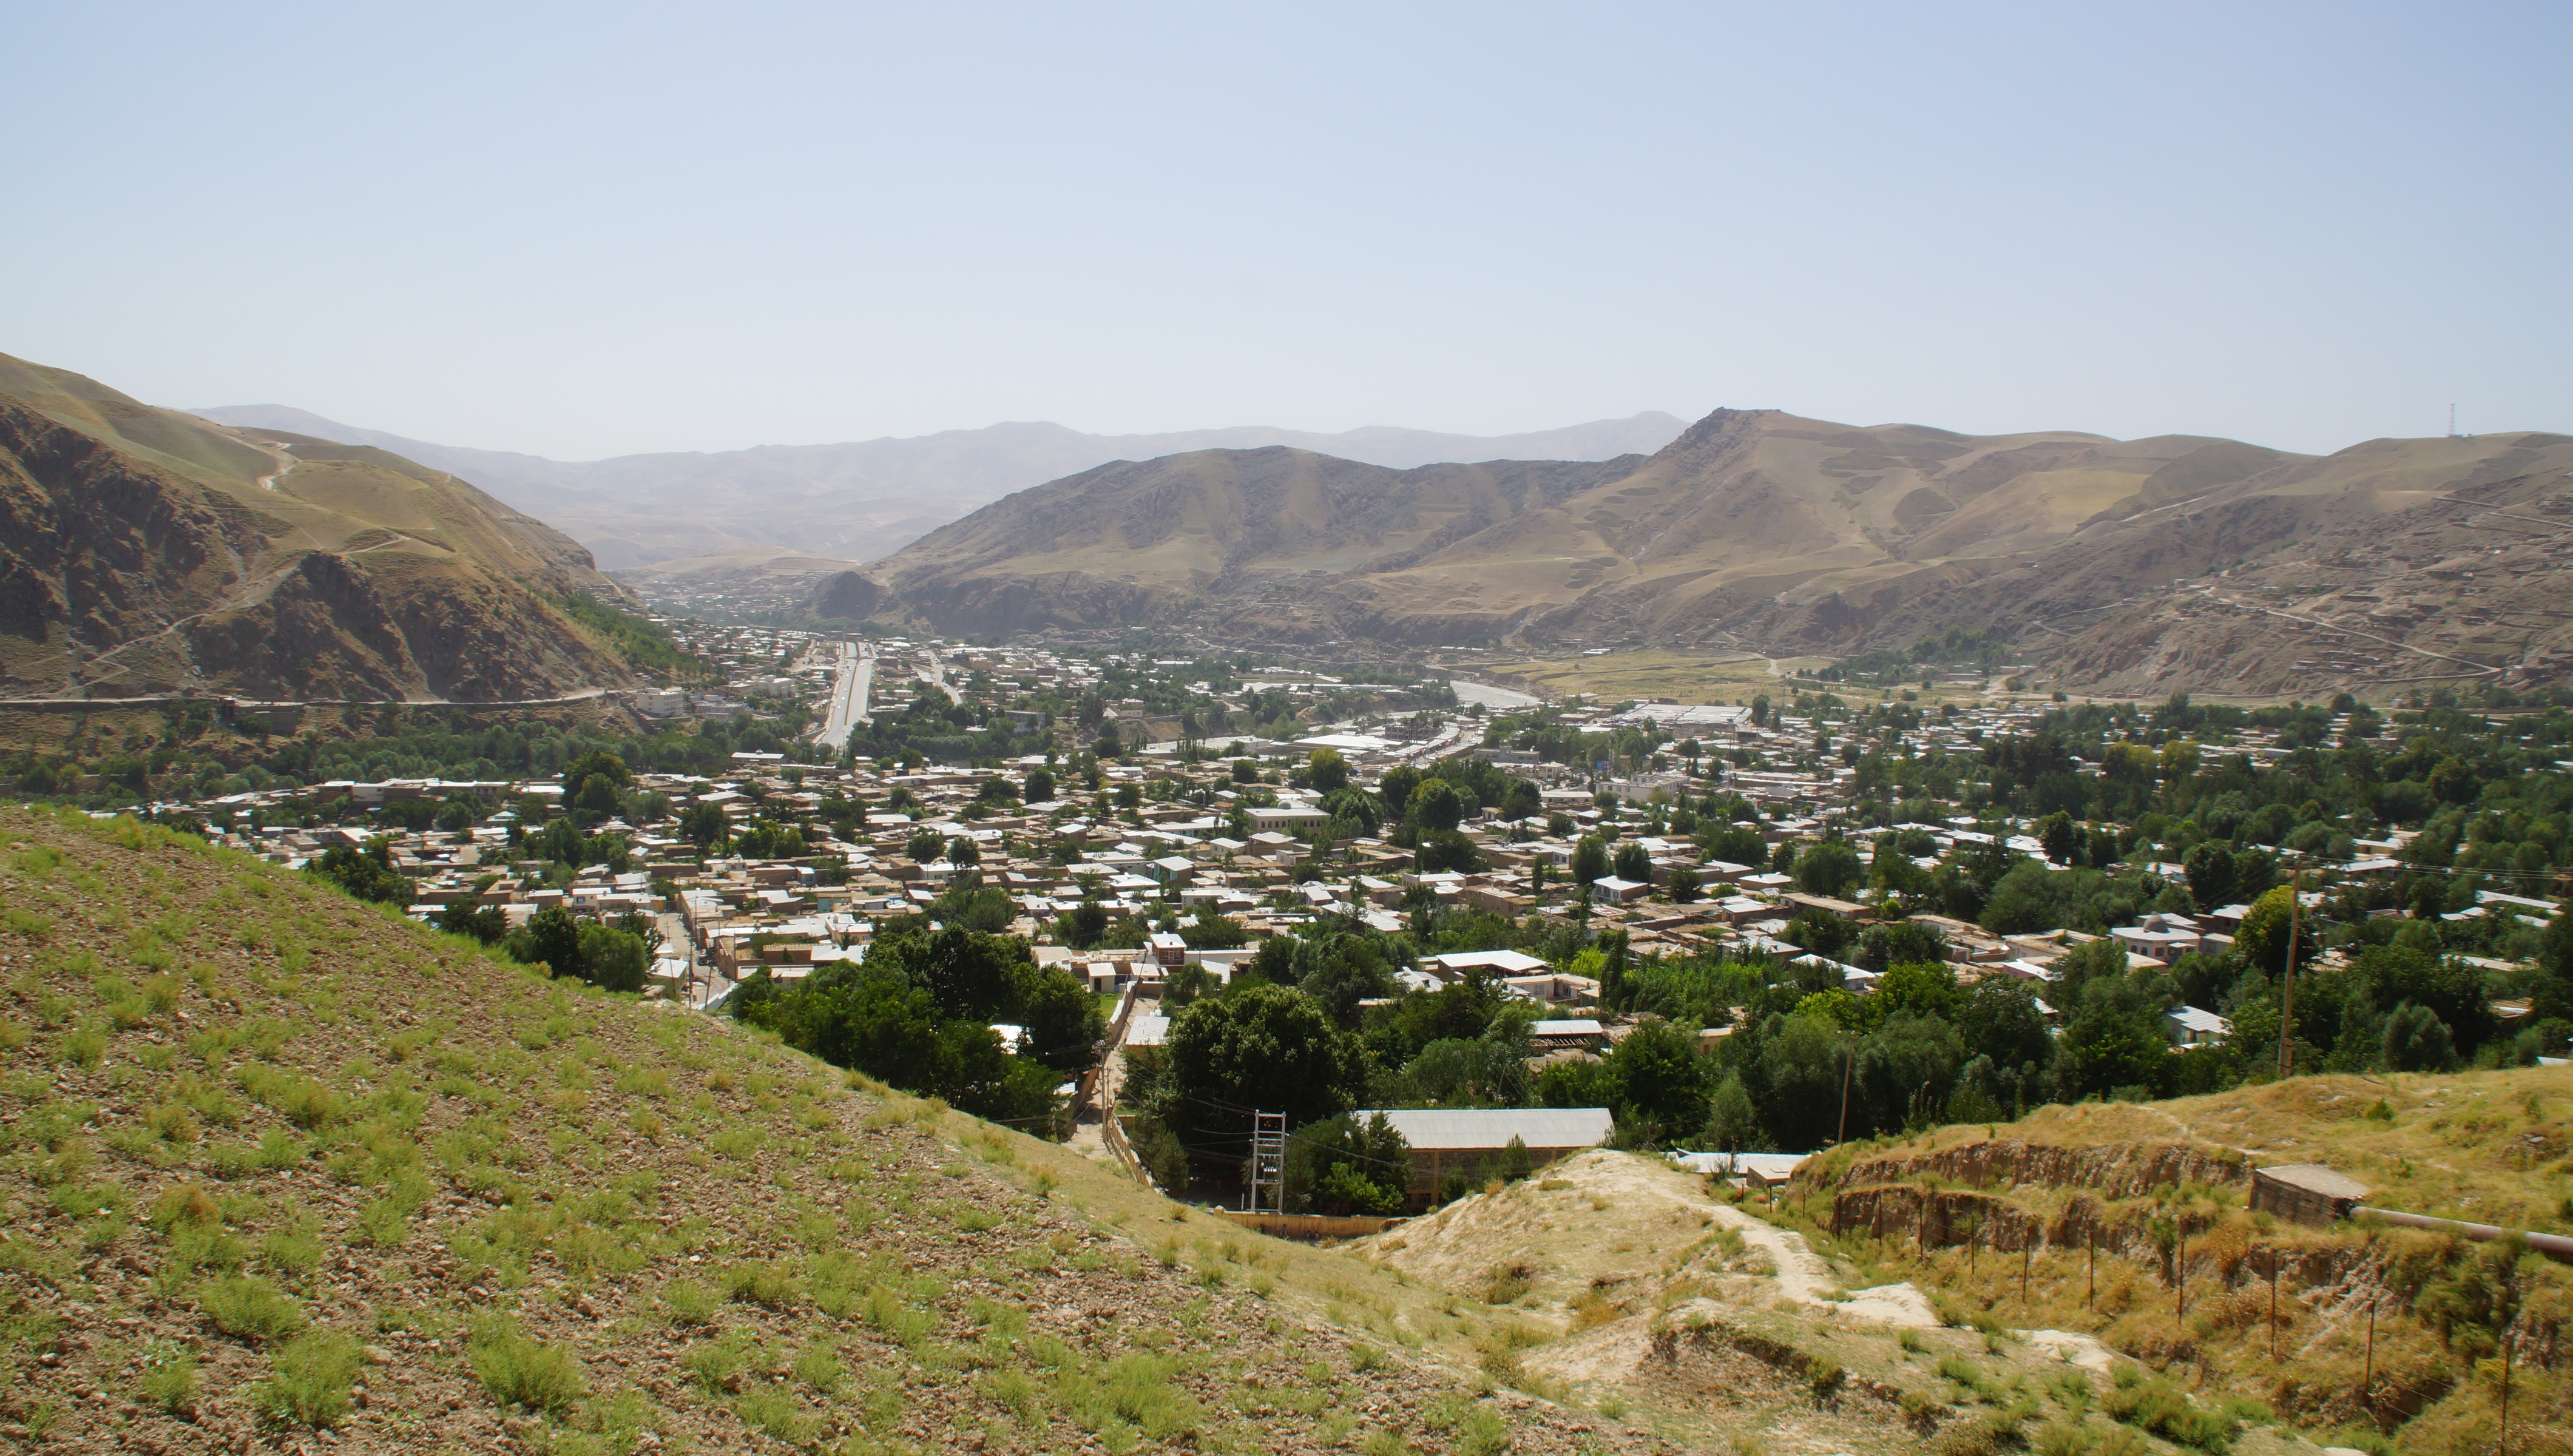 Badakhshan